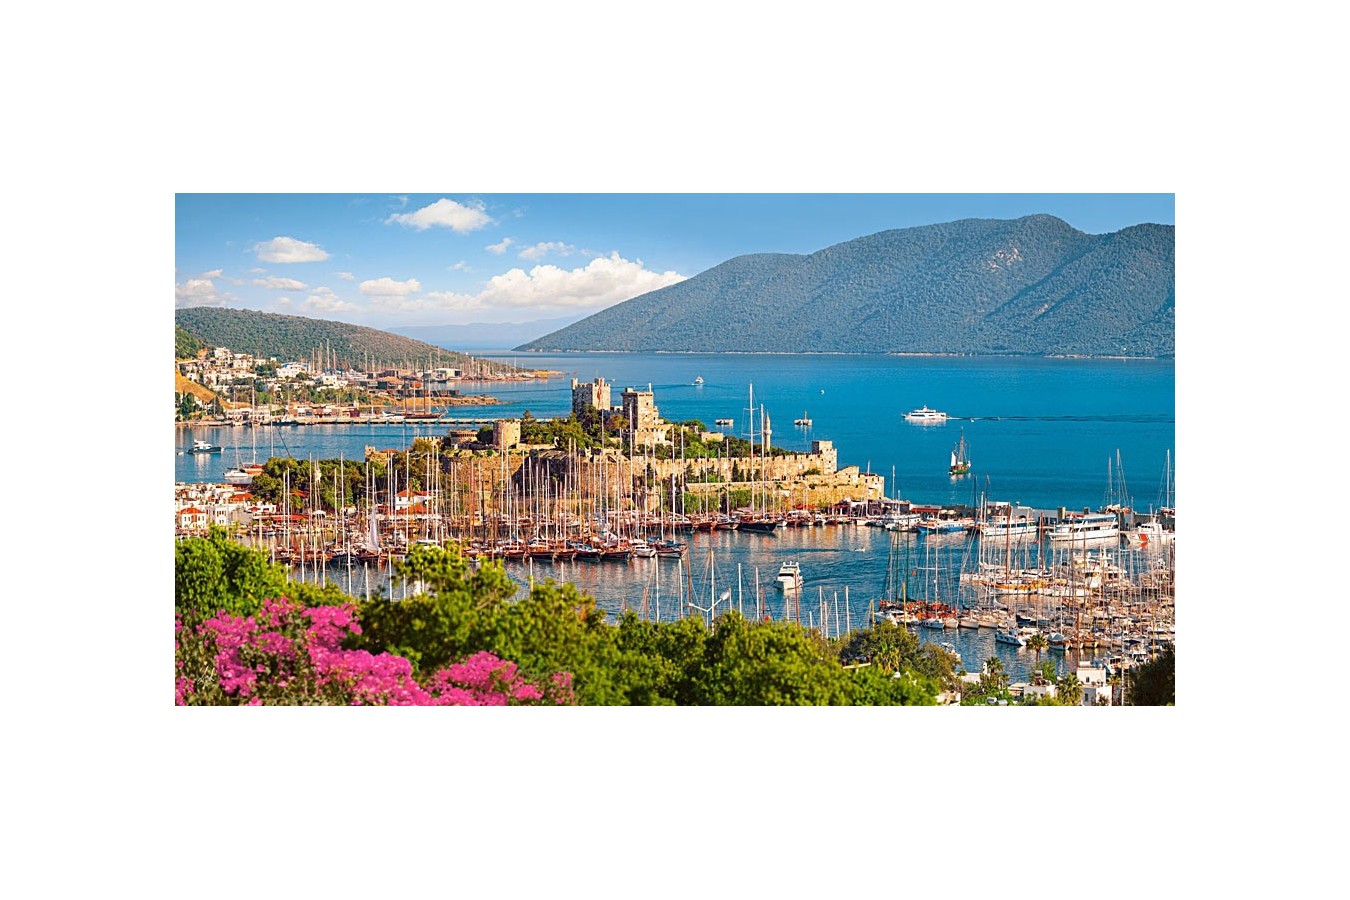 Puzzle Castorland - Bodrum Marina Turkish Riviera, 4000 piese